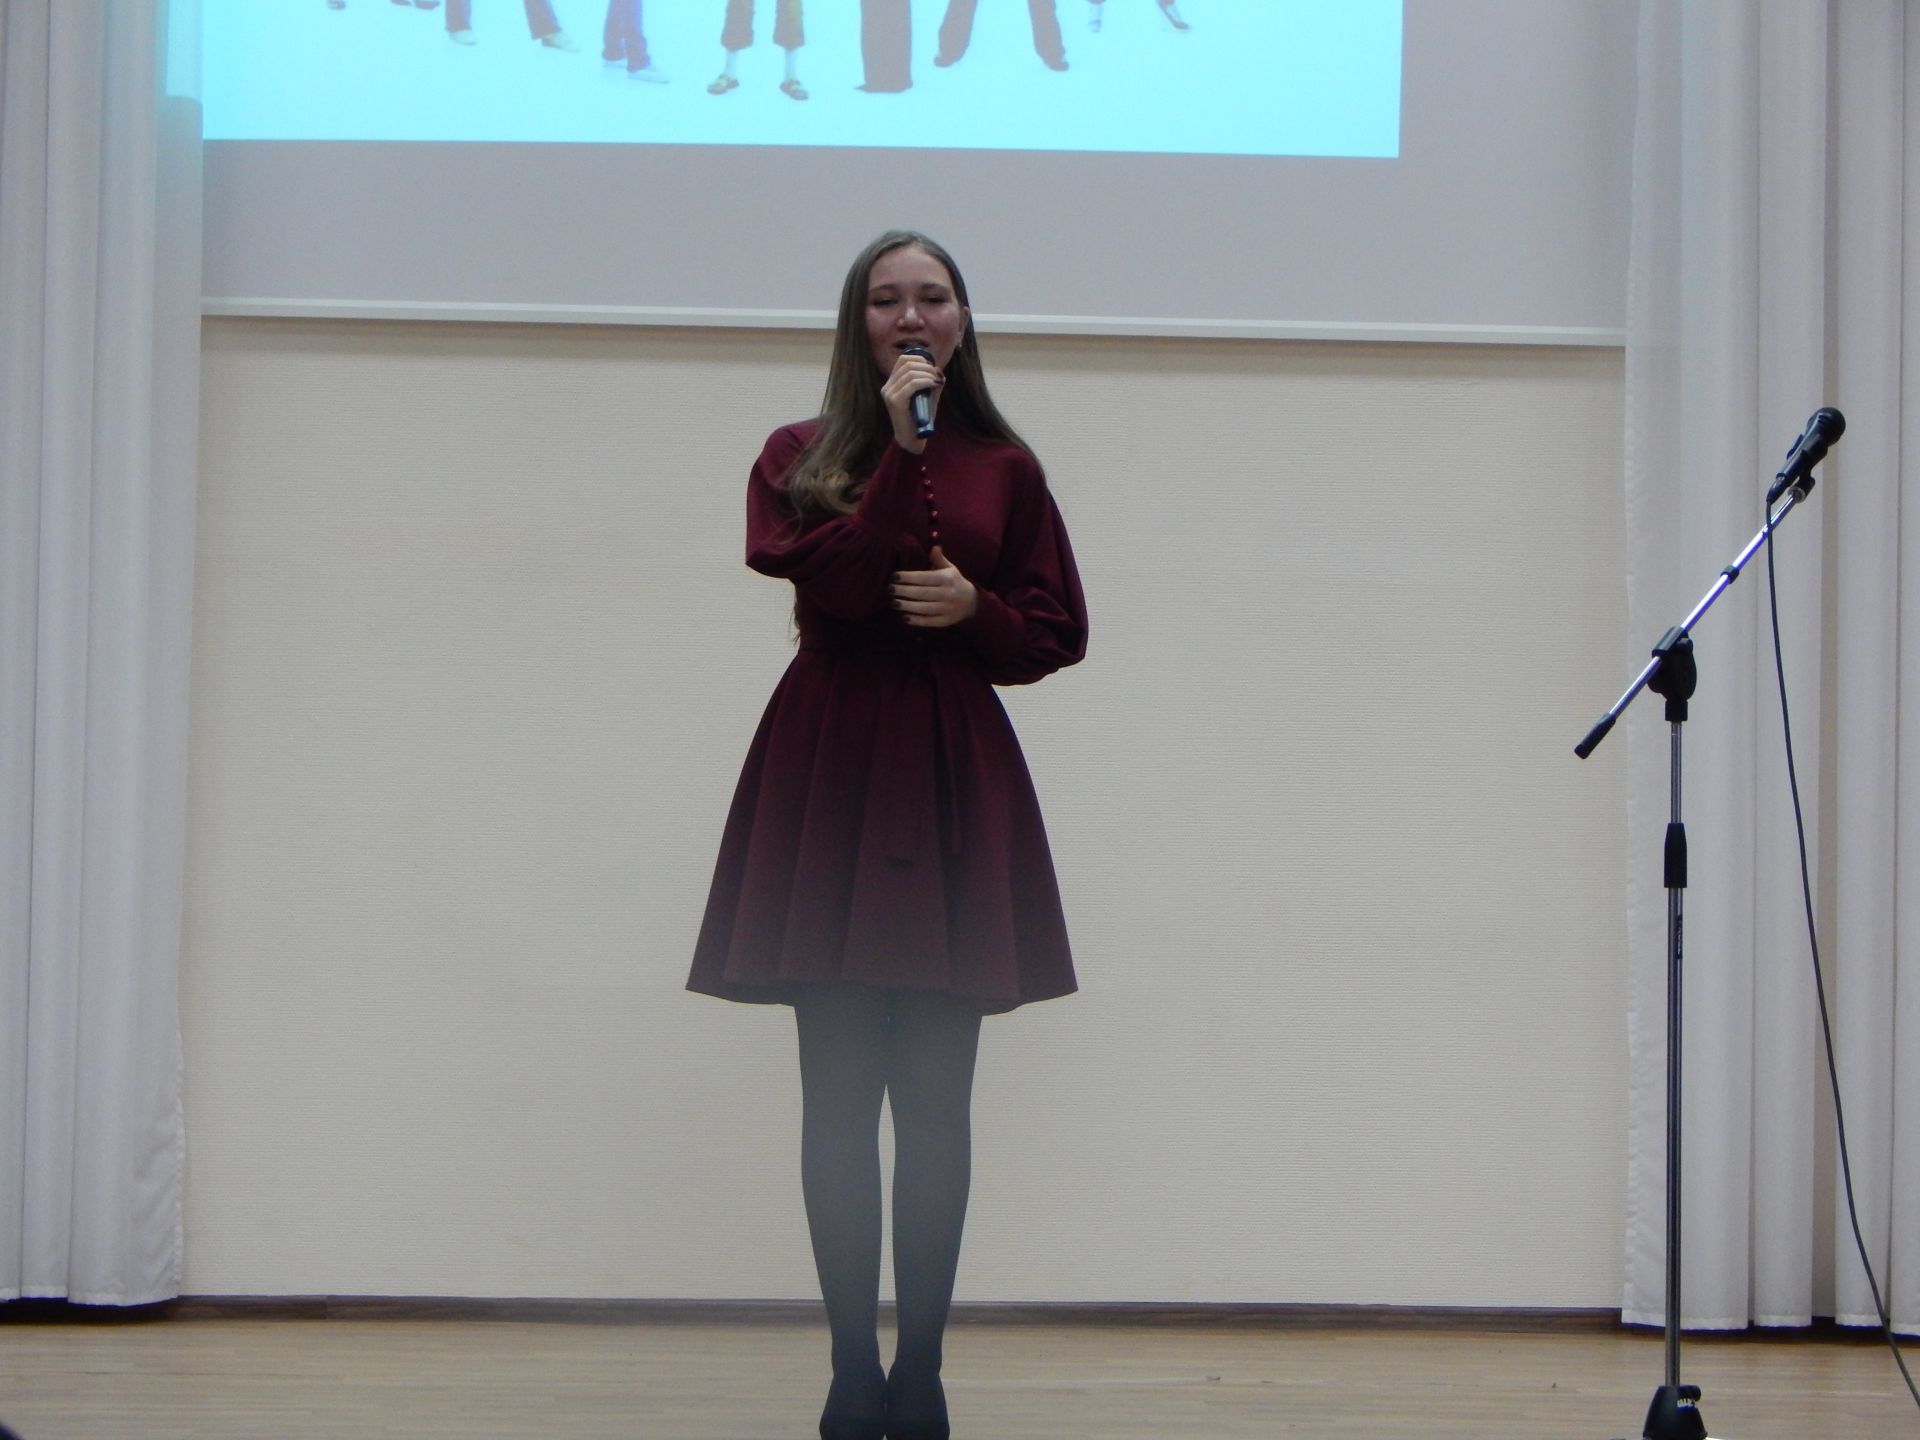 В Камских Полянах в школе №2 состоялся вечер встречи выпускников + ФОТОРЕПОРТАЖ